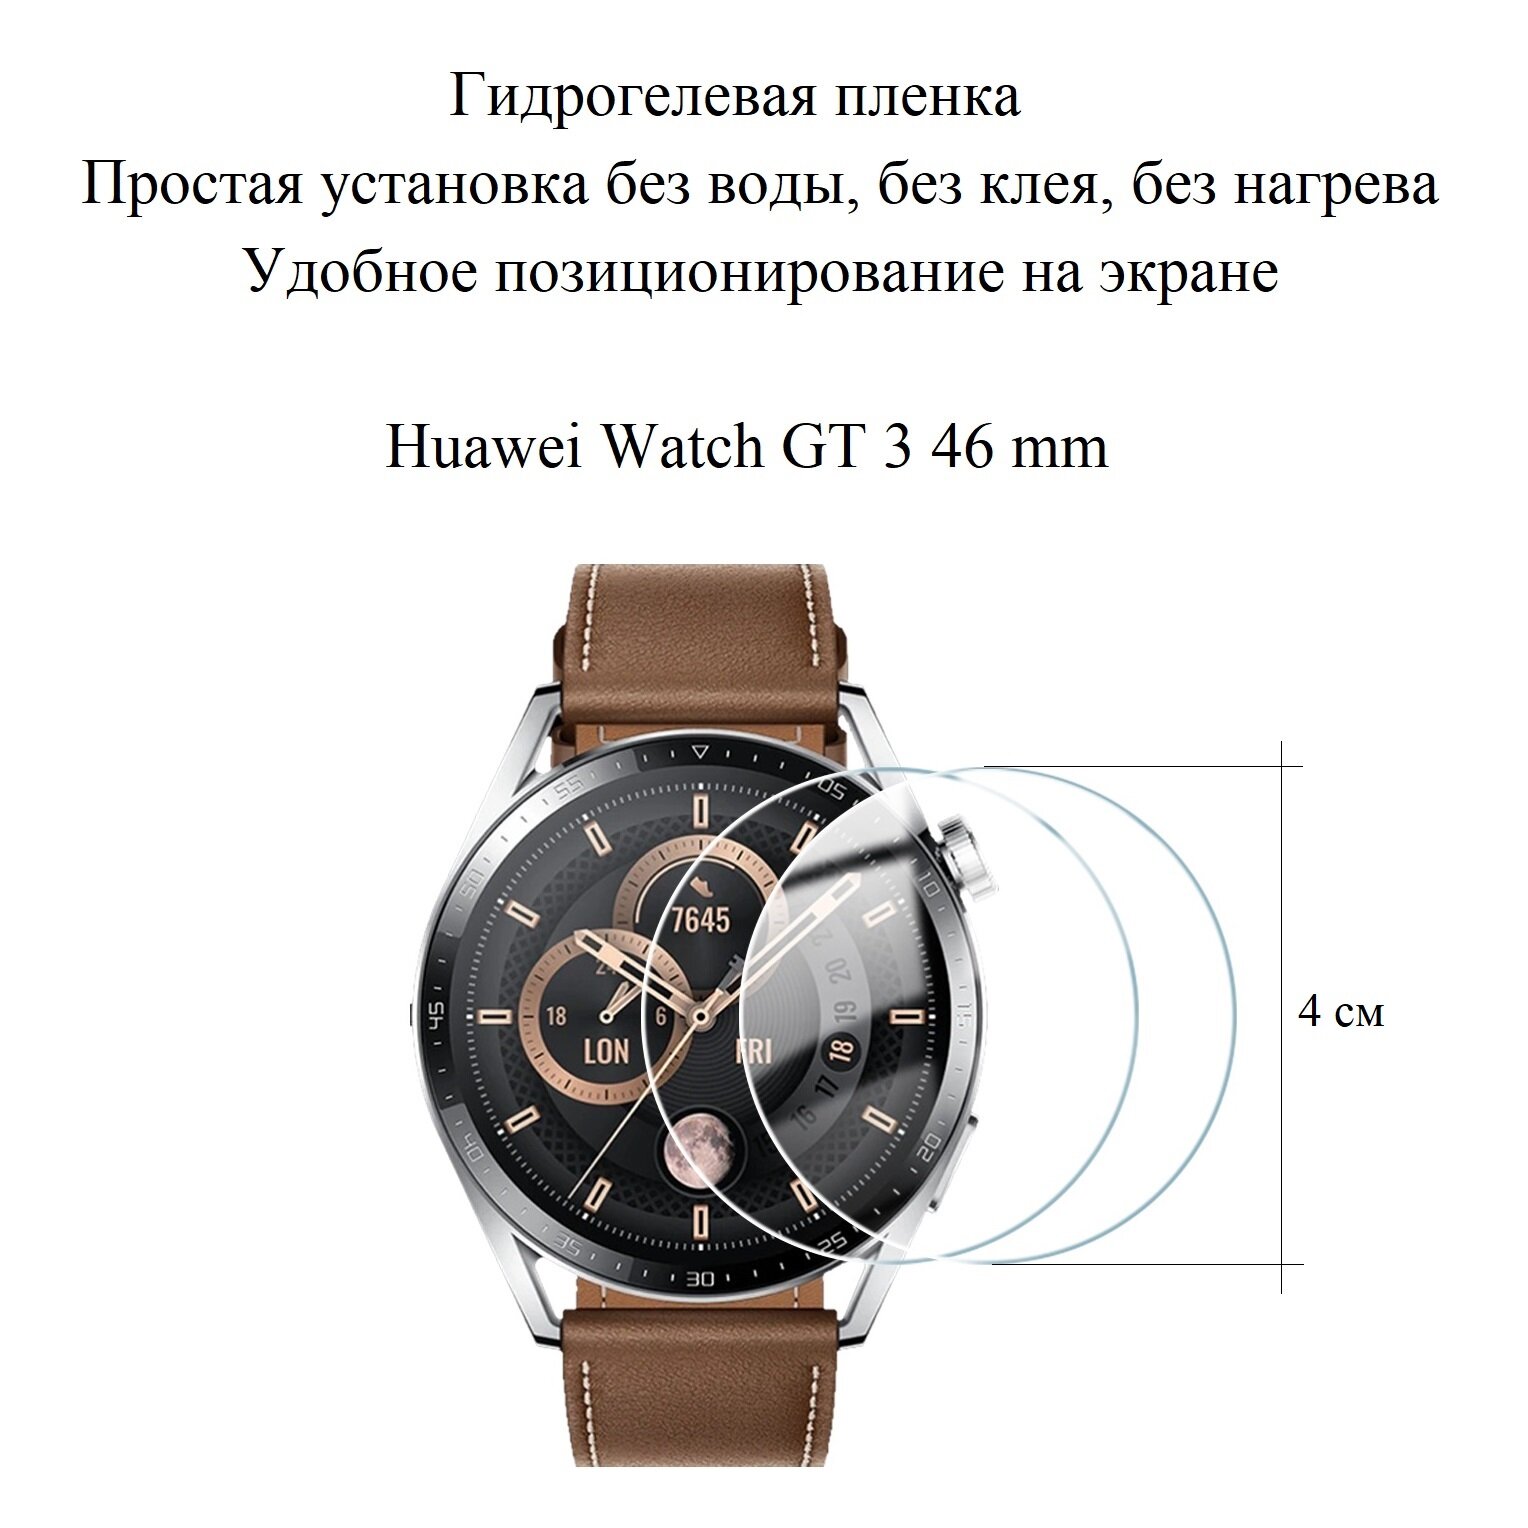 Глянцевая гидрогелевая пленка hoco. на экран смарт-часов Huawei Watch GT 3 46 mm (2 шт.)